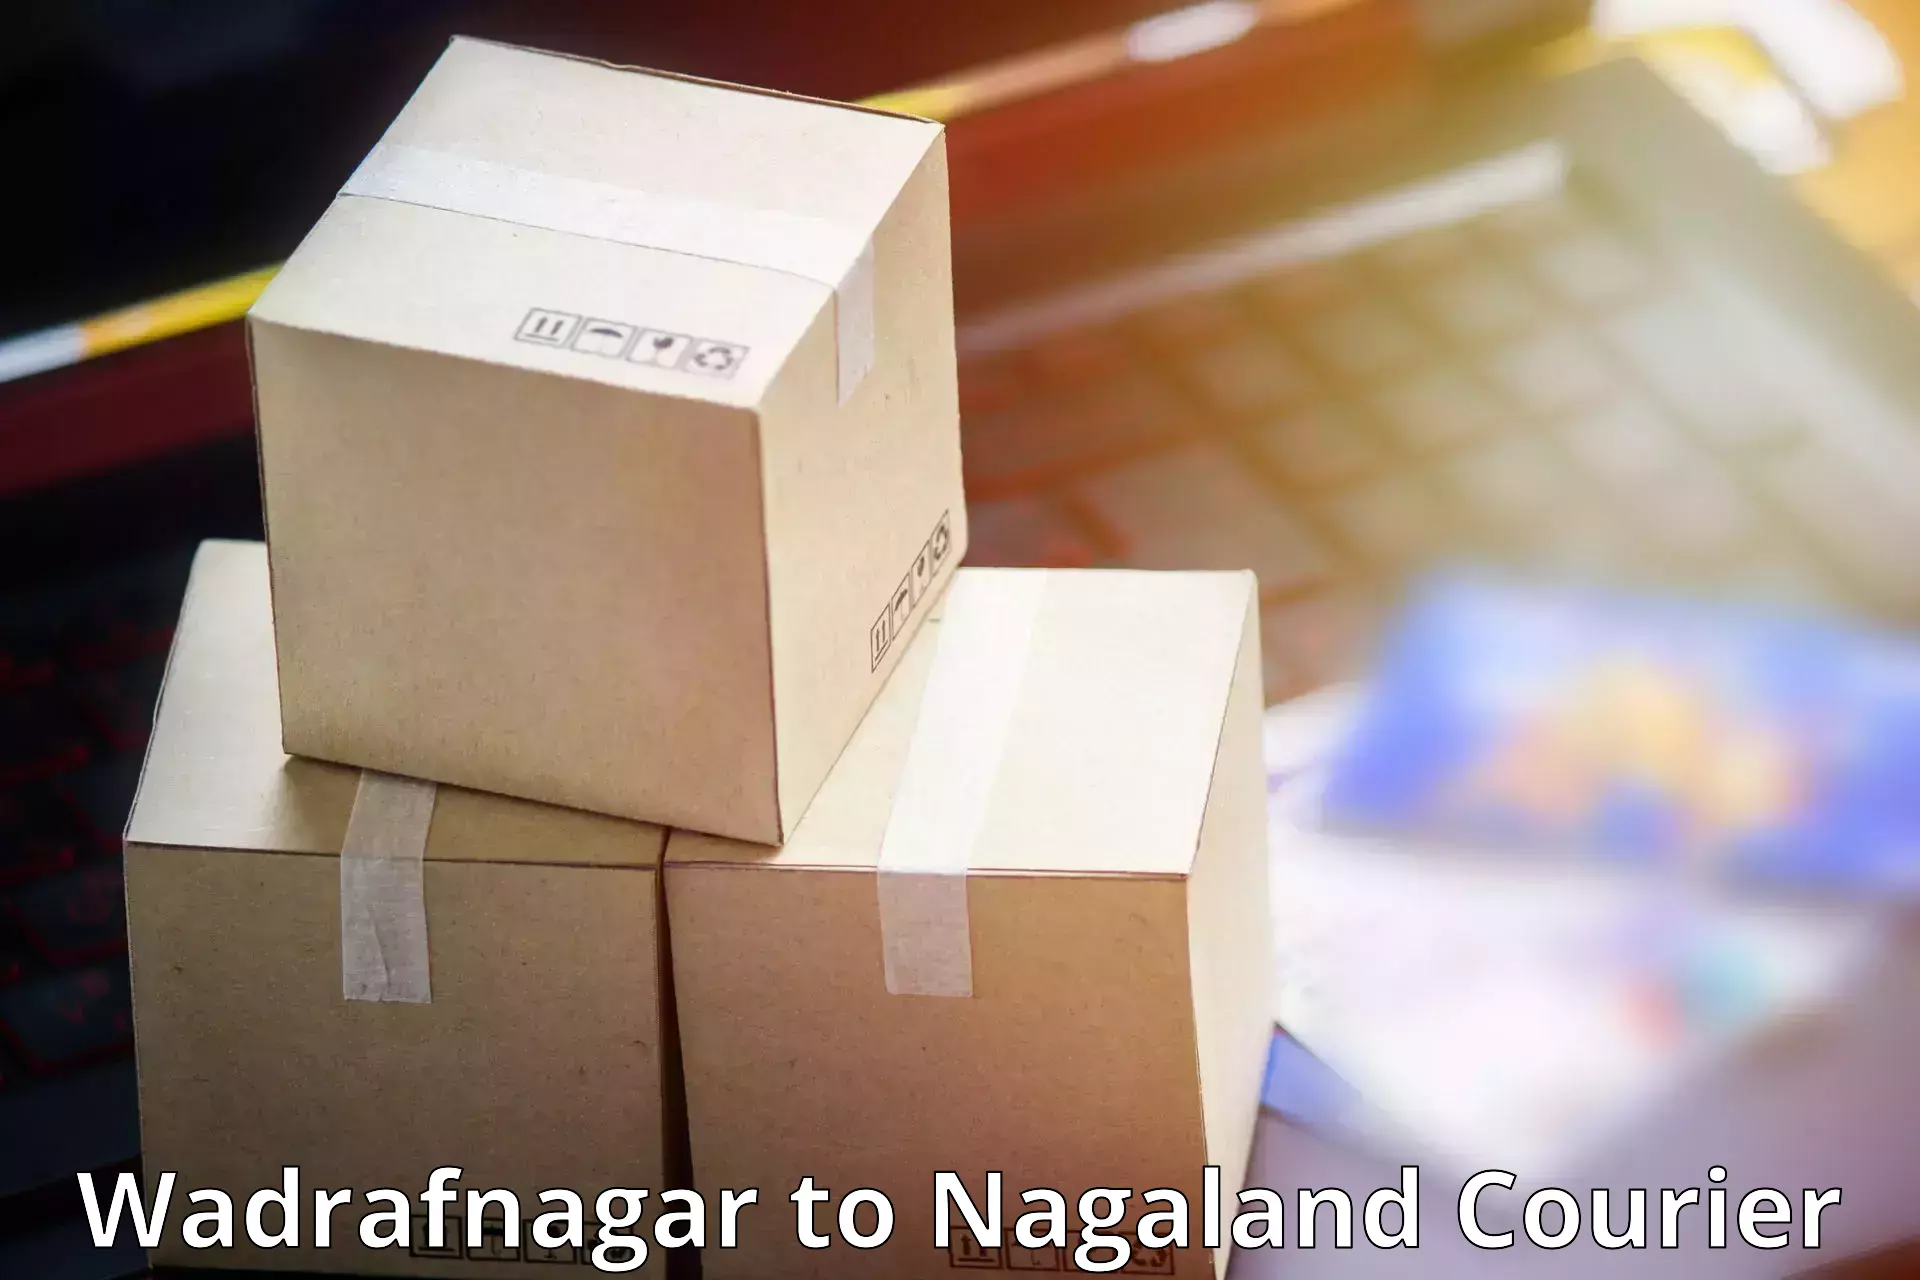 Cargo delivery service Wadrafnagar to Mon